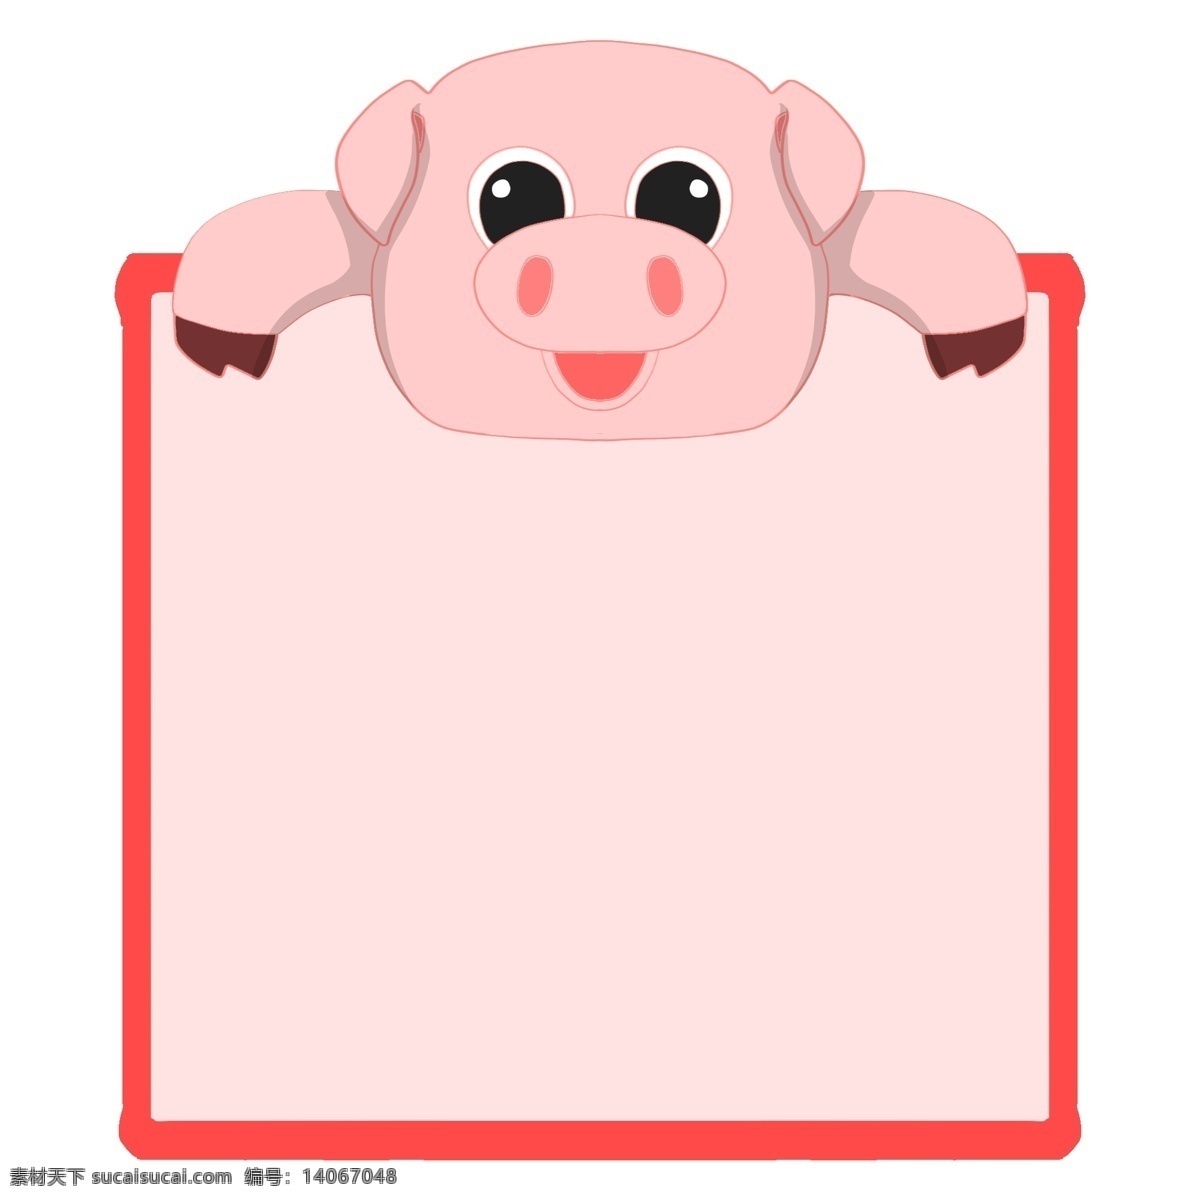 手绘 小 猪 对话框 插画 小猪对话框 手绘粉色边框 可爱的小猪 可爱的小动物 粉色小猪插画 卡通